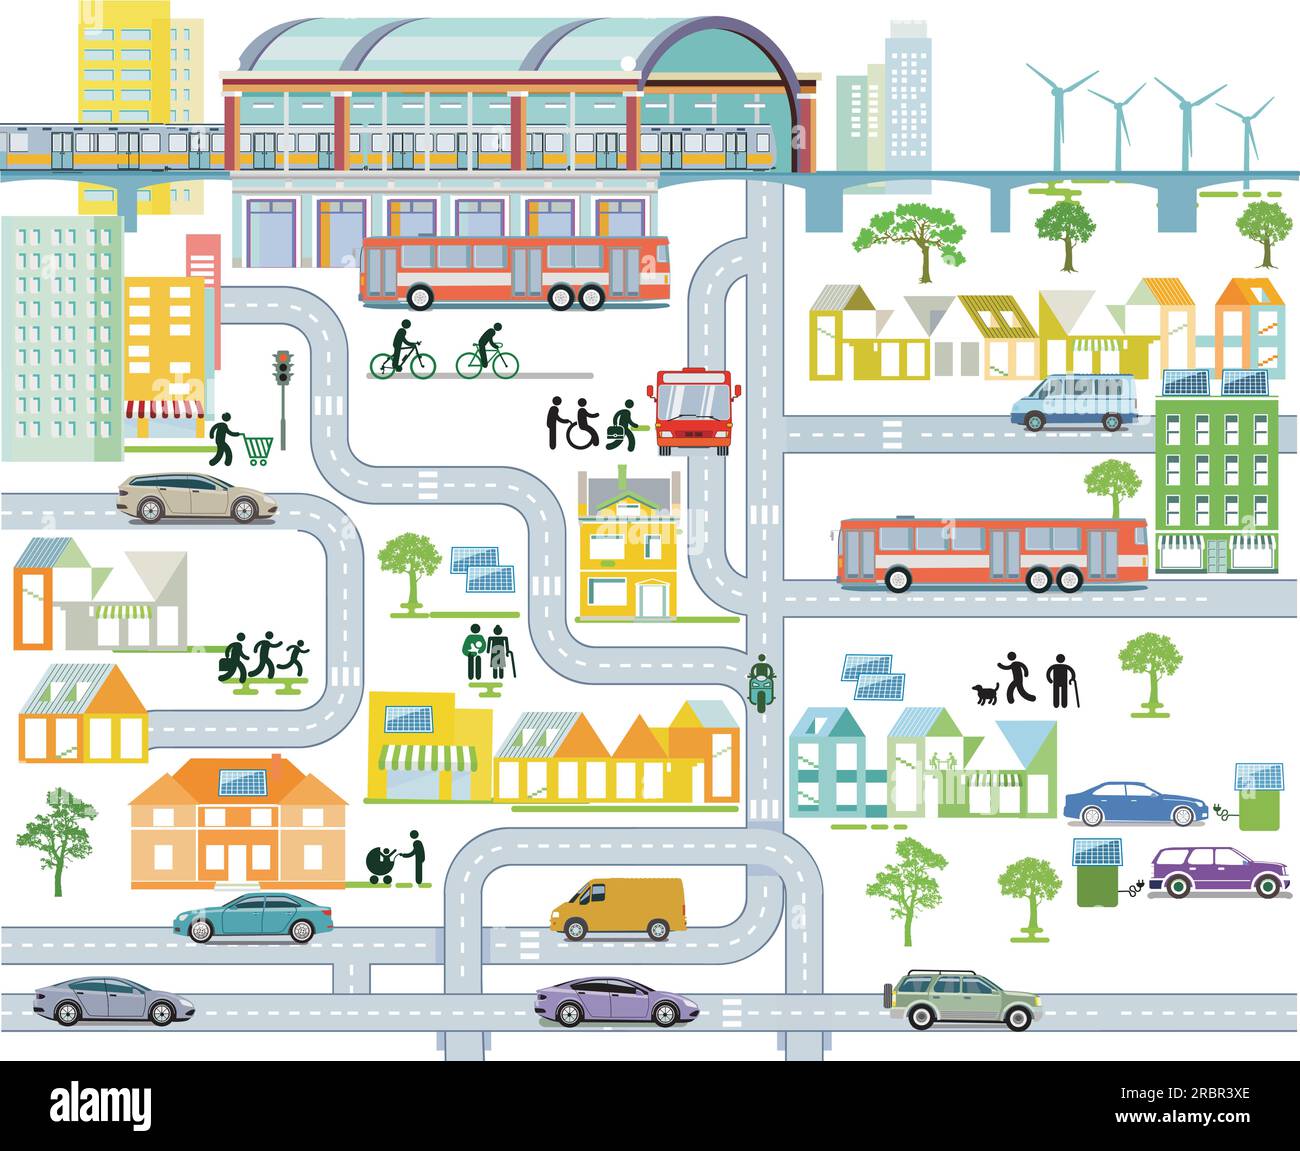 Panoramica della città con traffico, case e stazione ferroviaria, illustrazione informativa Illustrazione Vettoriale